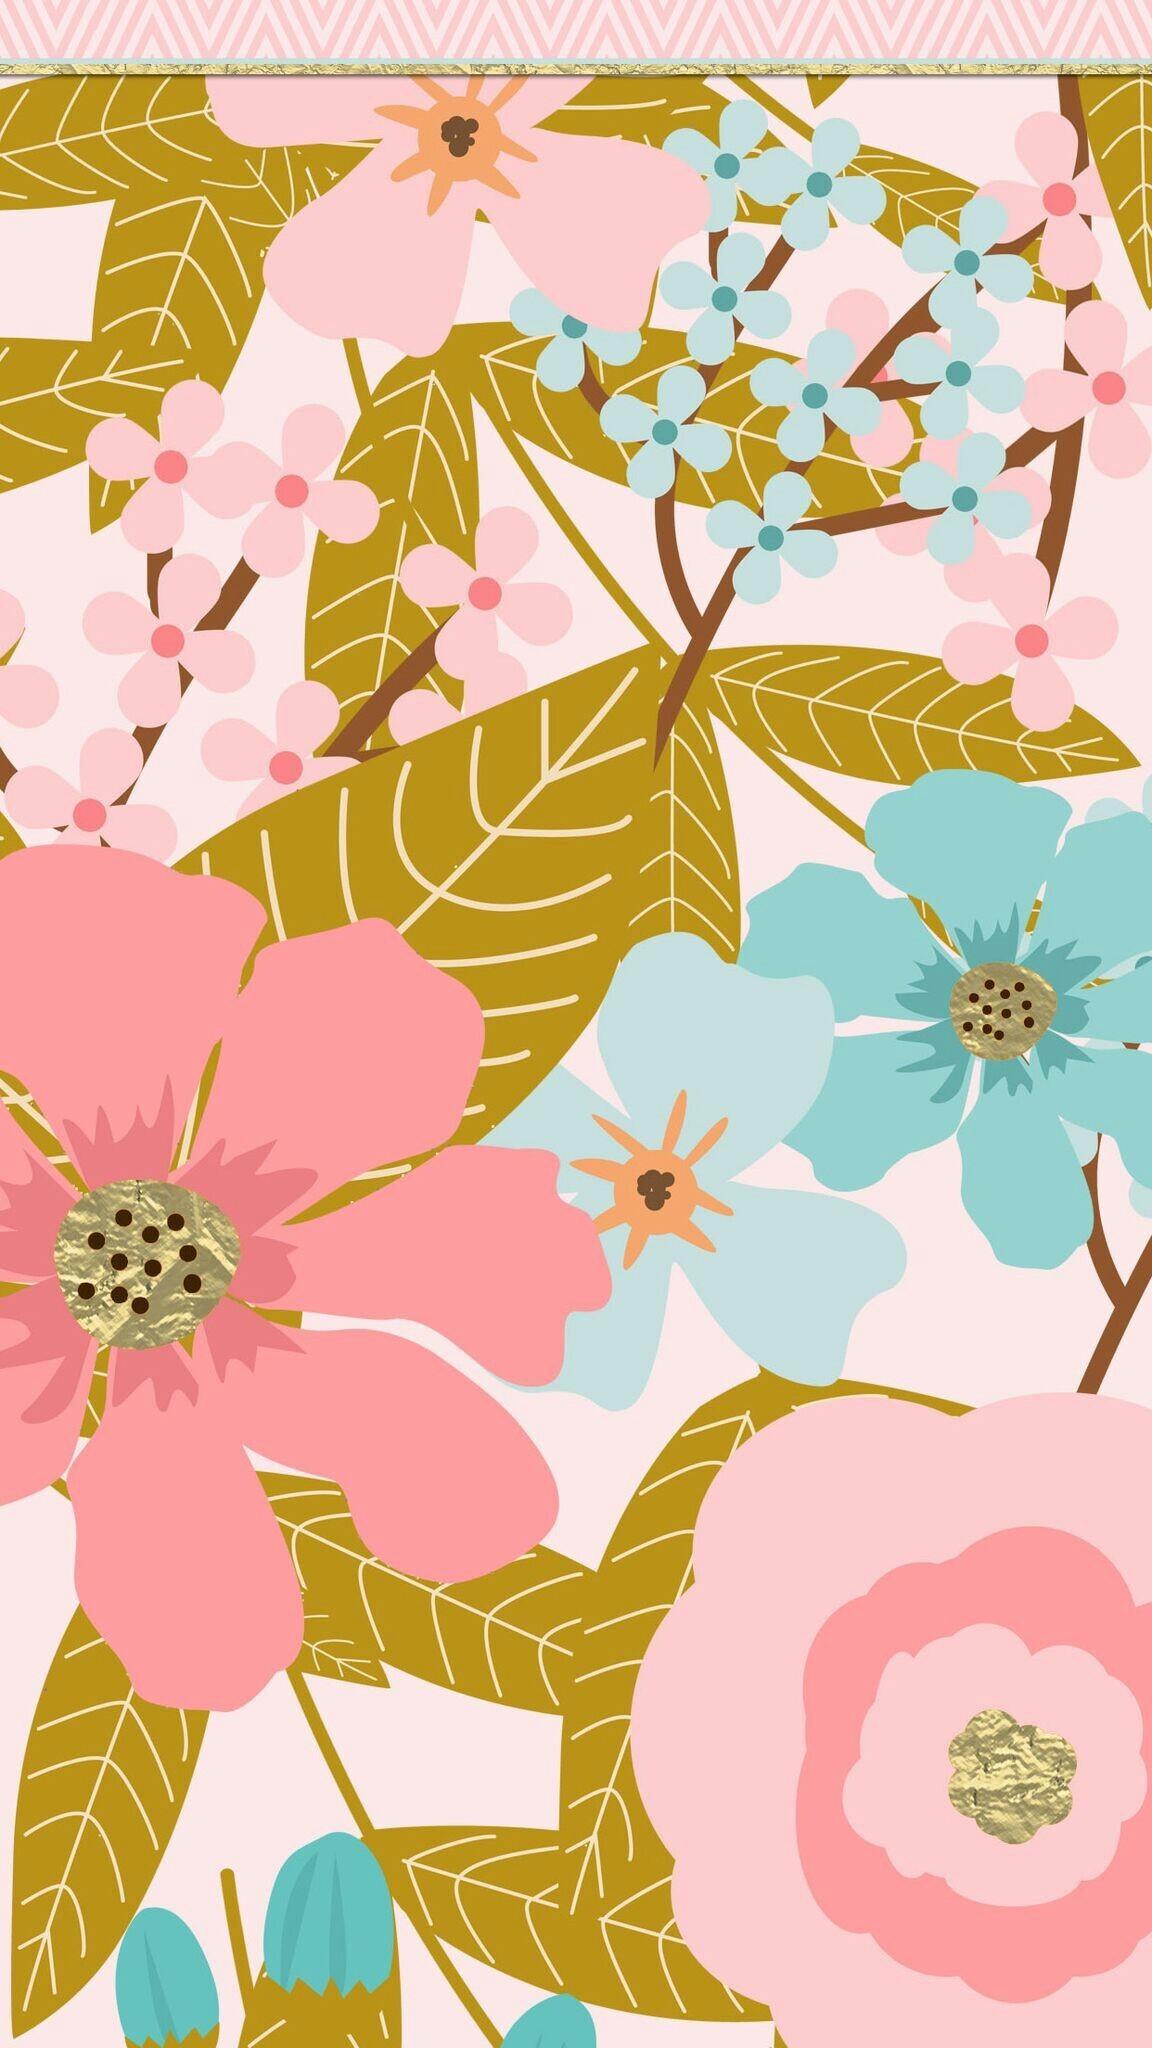 Flower Wallpaper iPhone